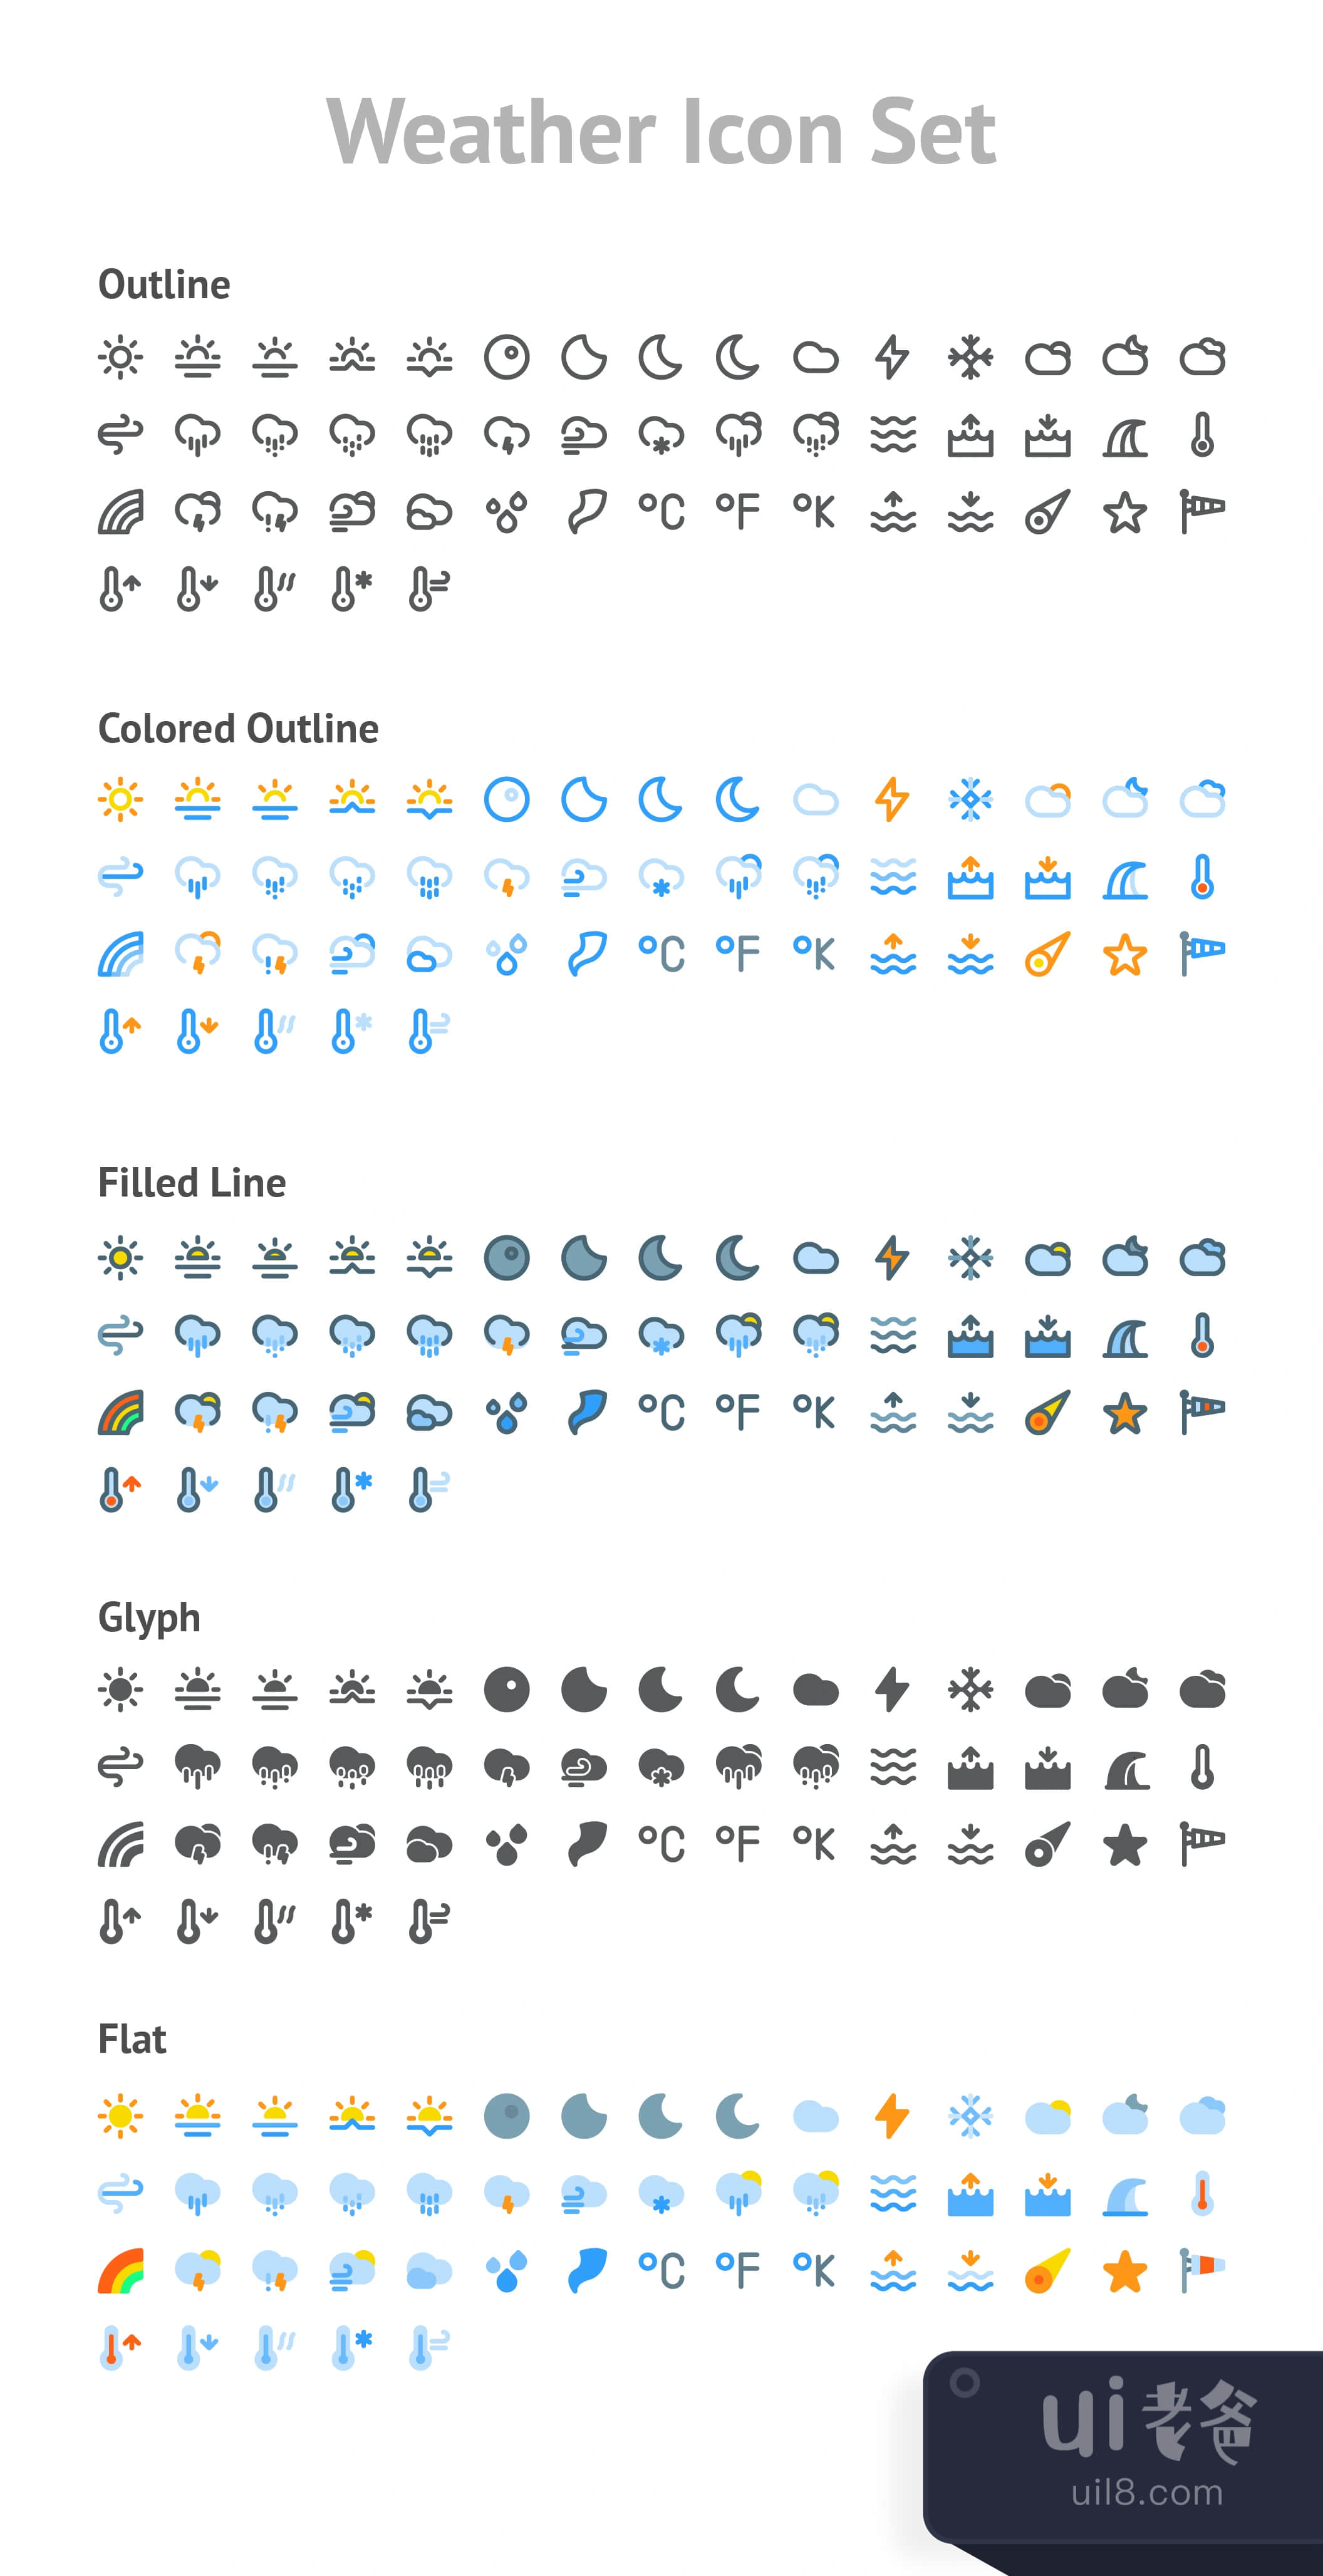 天气图标集 (Weather Icon Set)插图